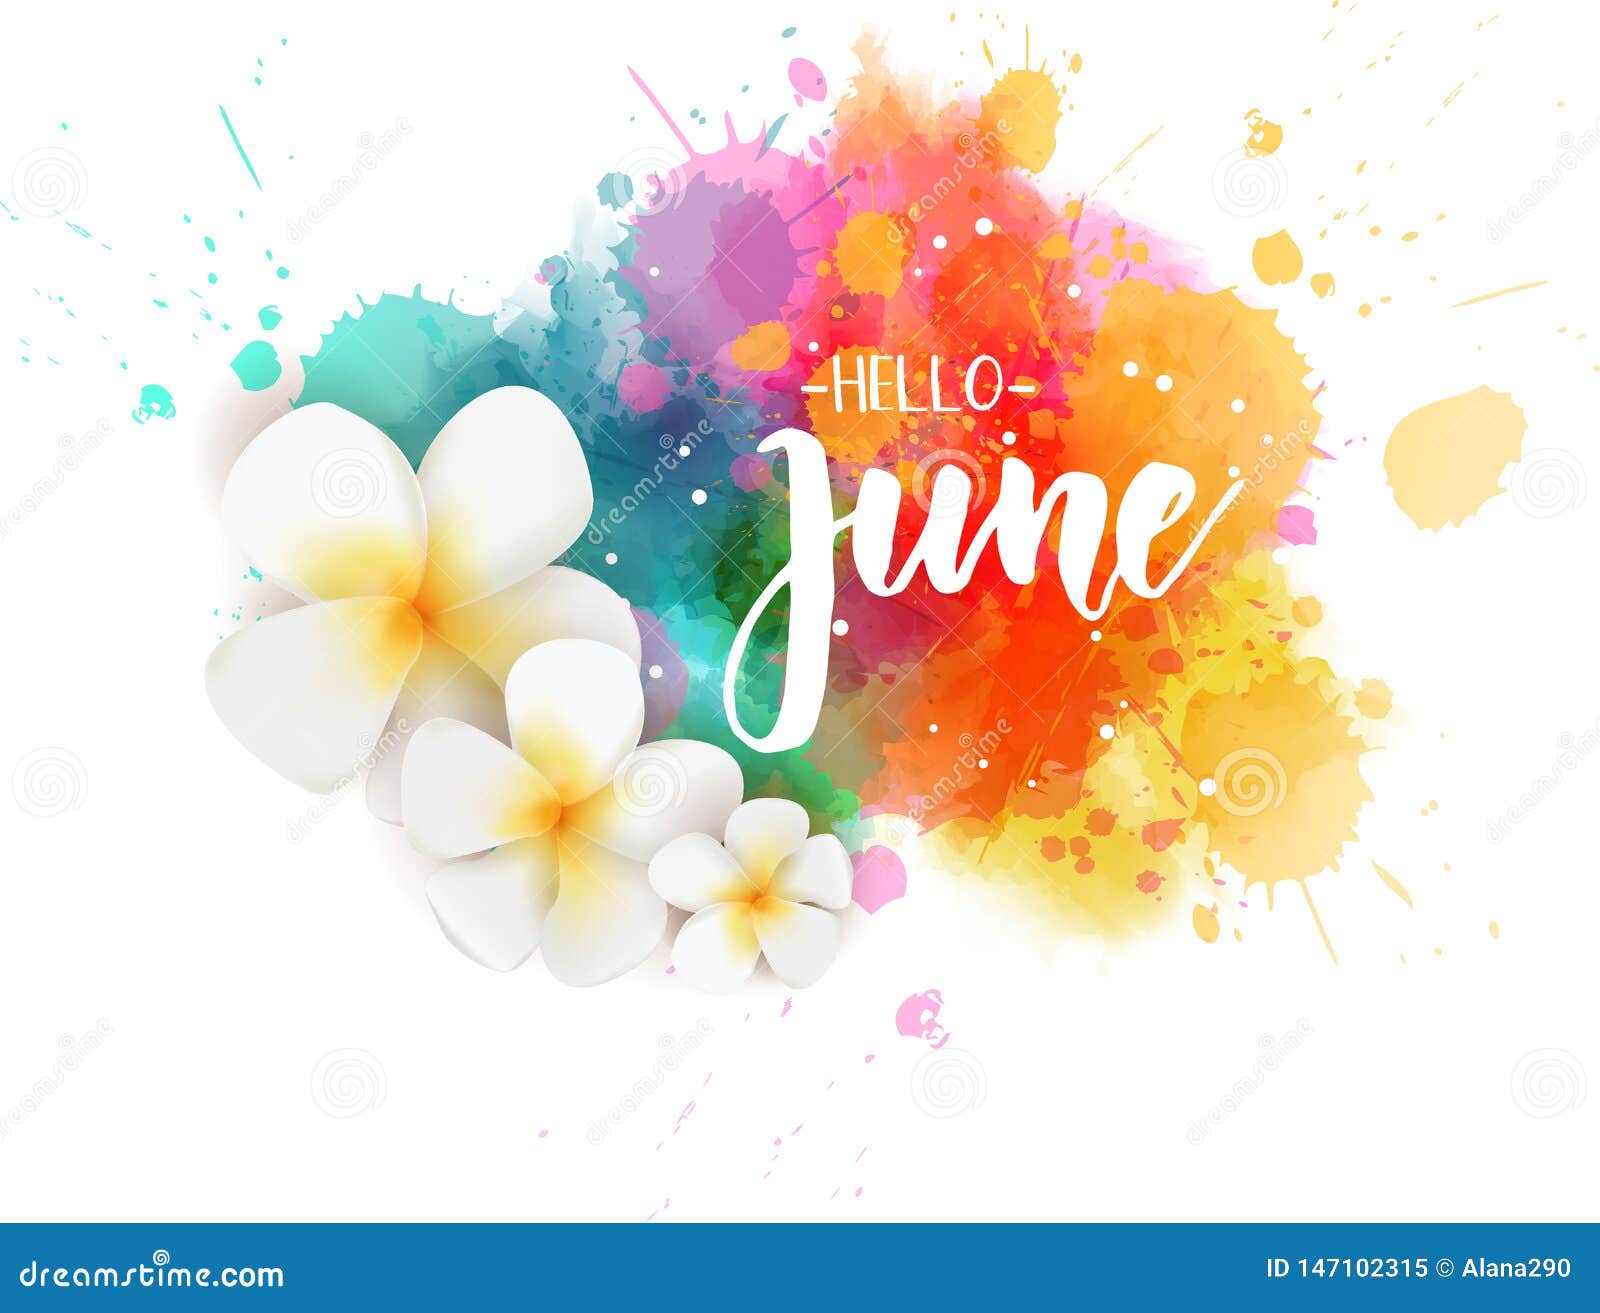 你好6月 花卉夏天概念背景向量例证 插画包括有